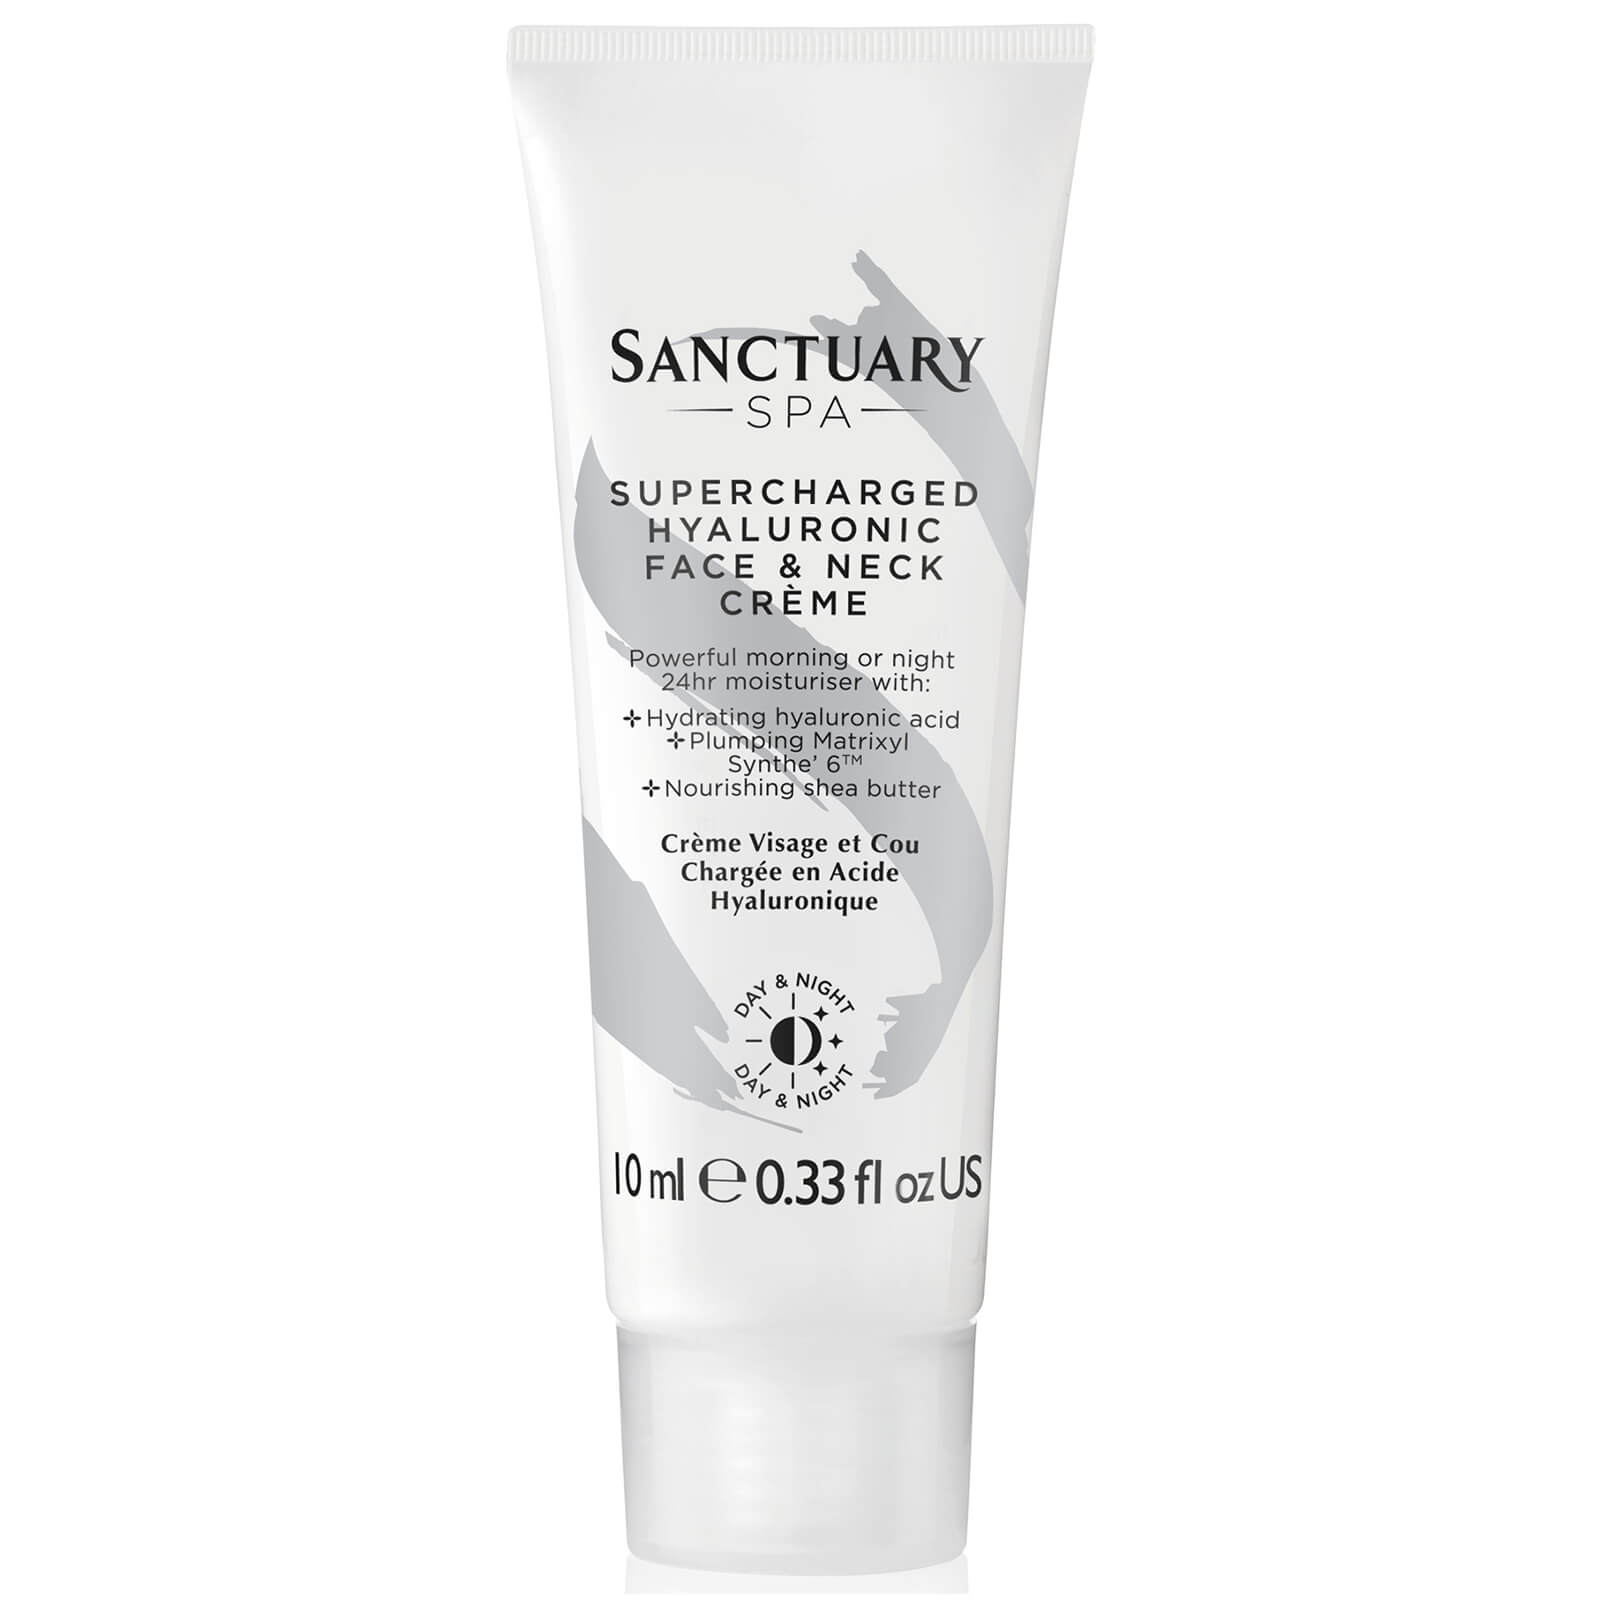 Sanctuary Spa Overnight Face and Neck Mini Crème 10ml